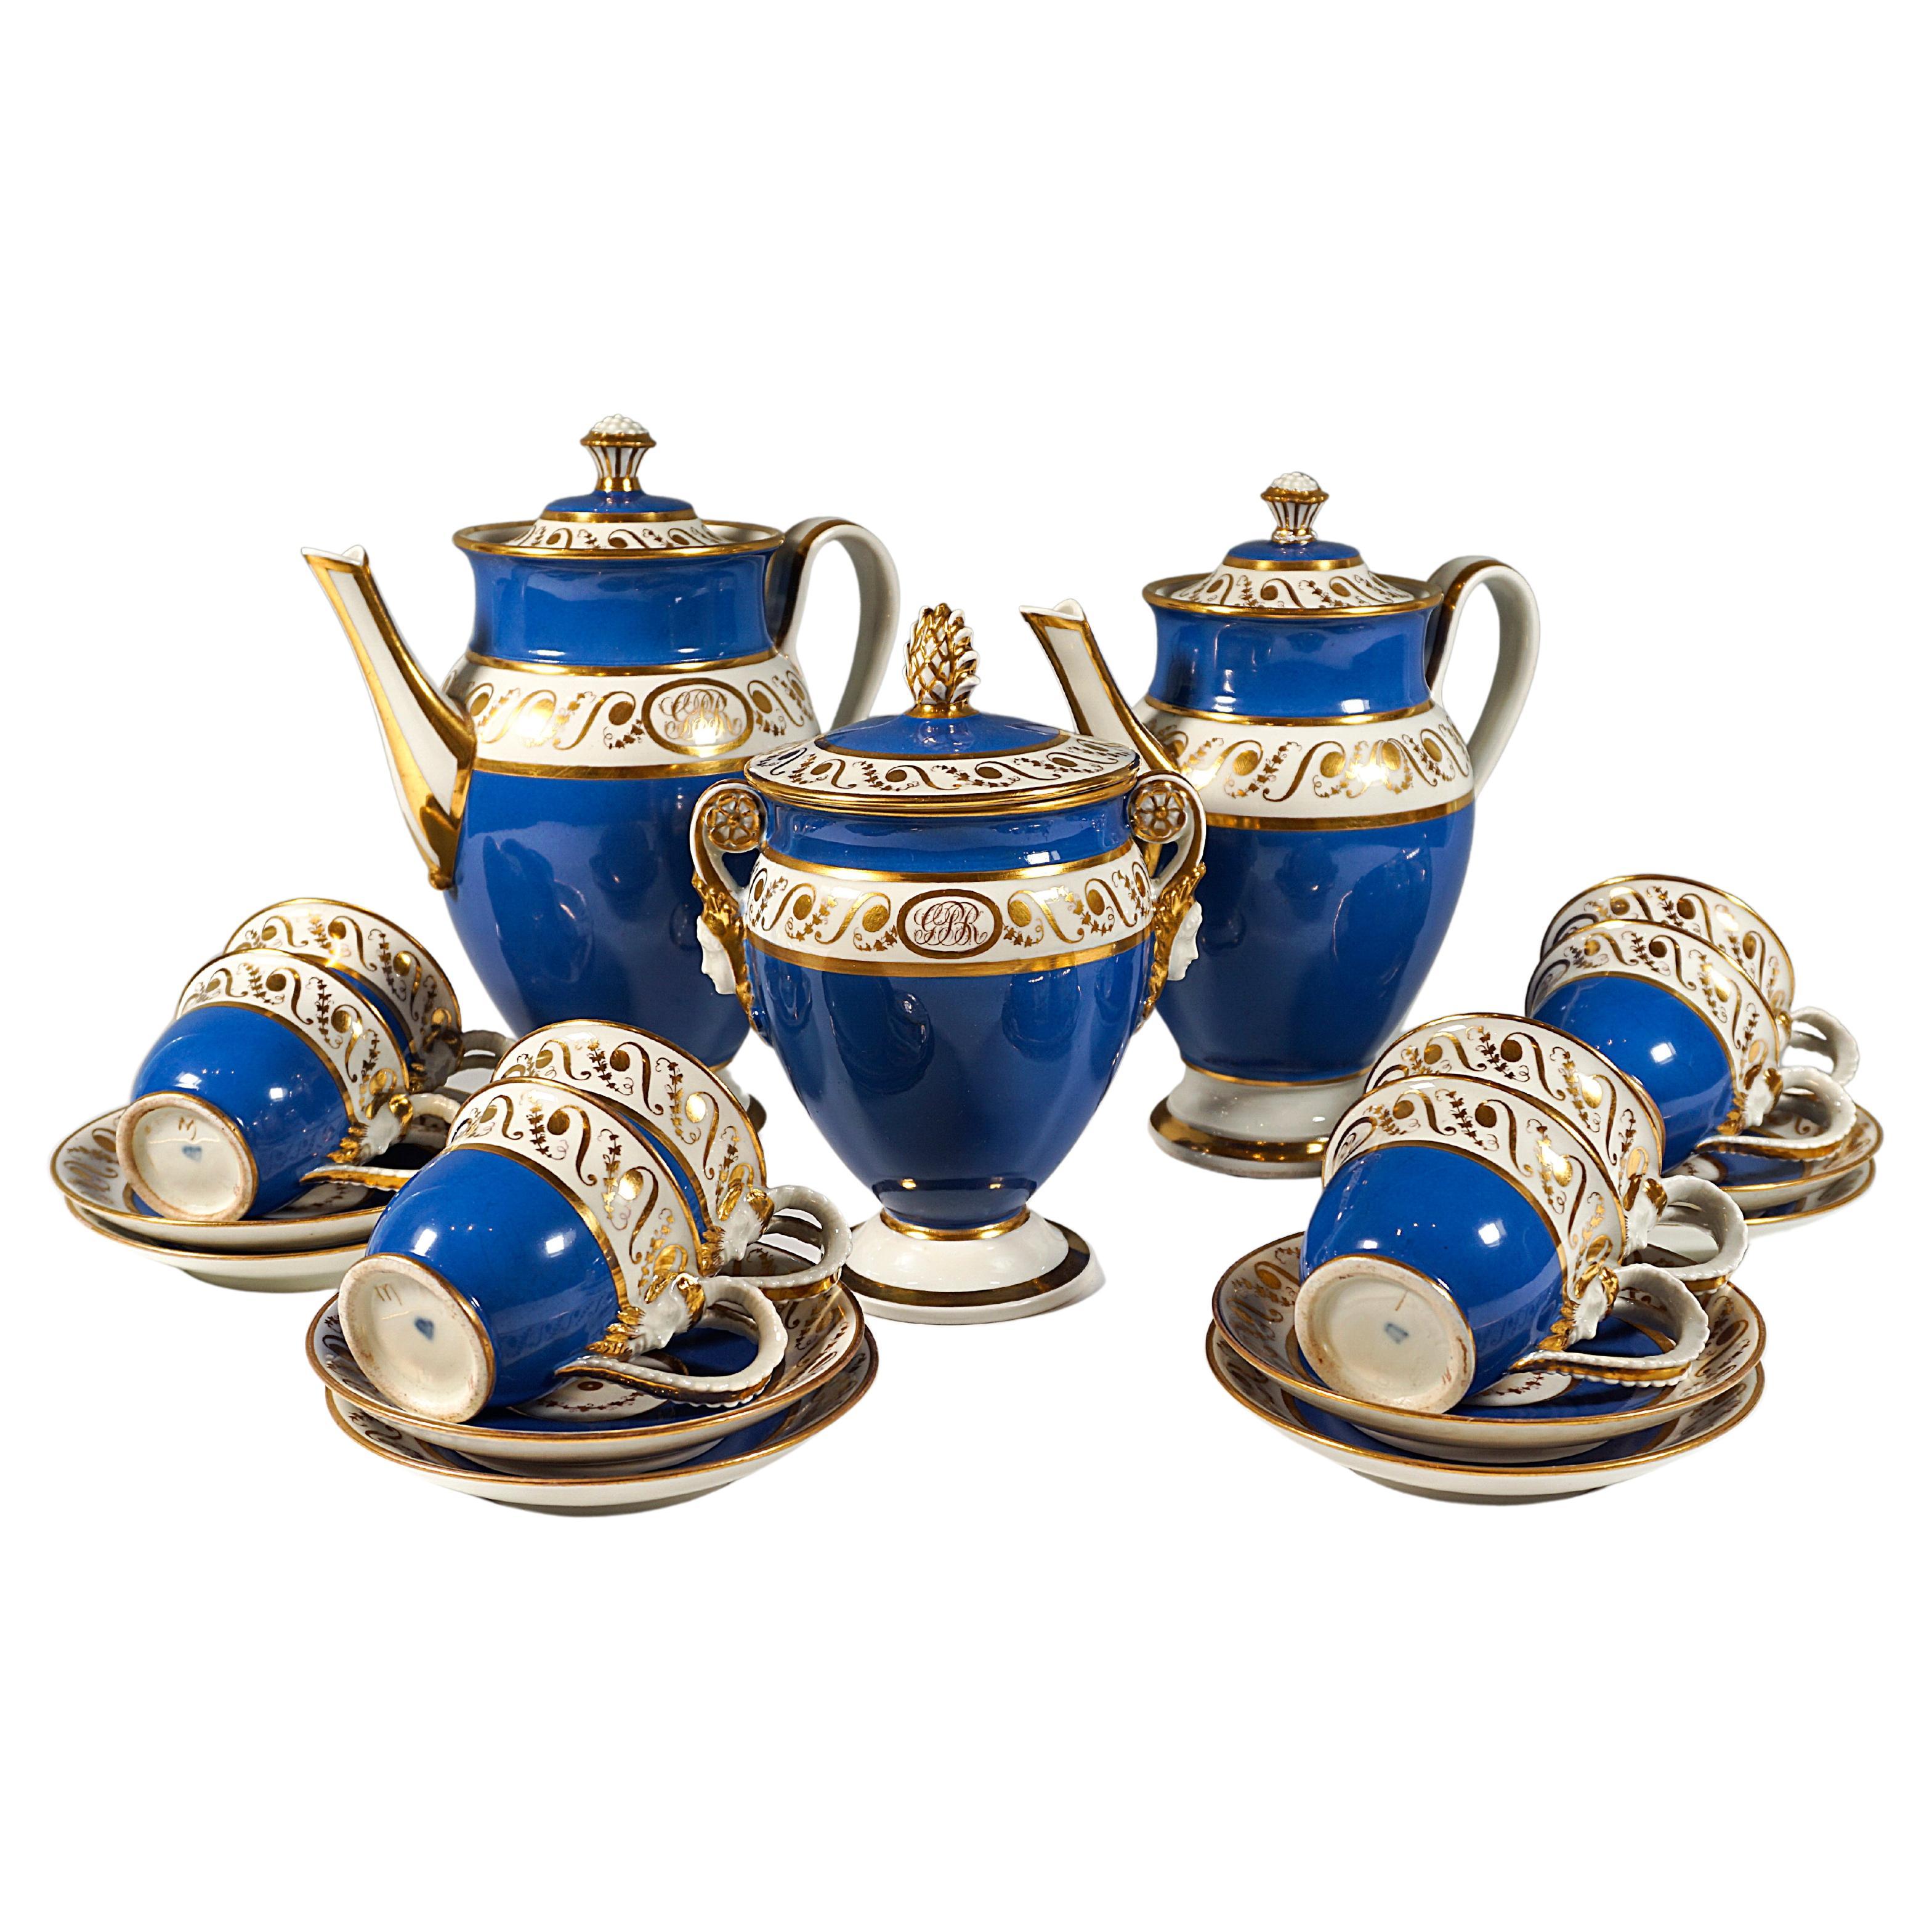 Wiener kaiserliches Porzellan-Couchtisch, 8 Personen, preußisch-blau und Gold, 1825